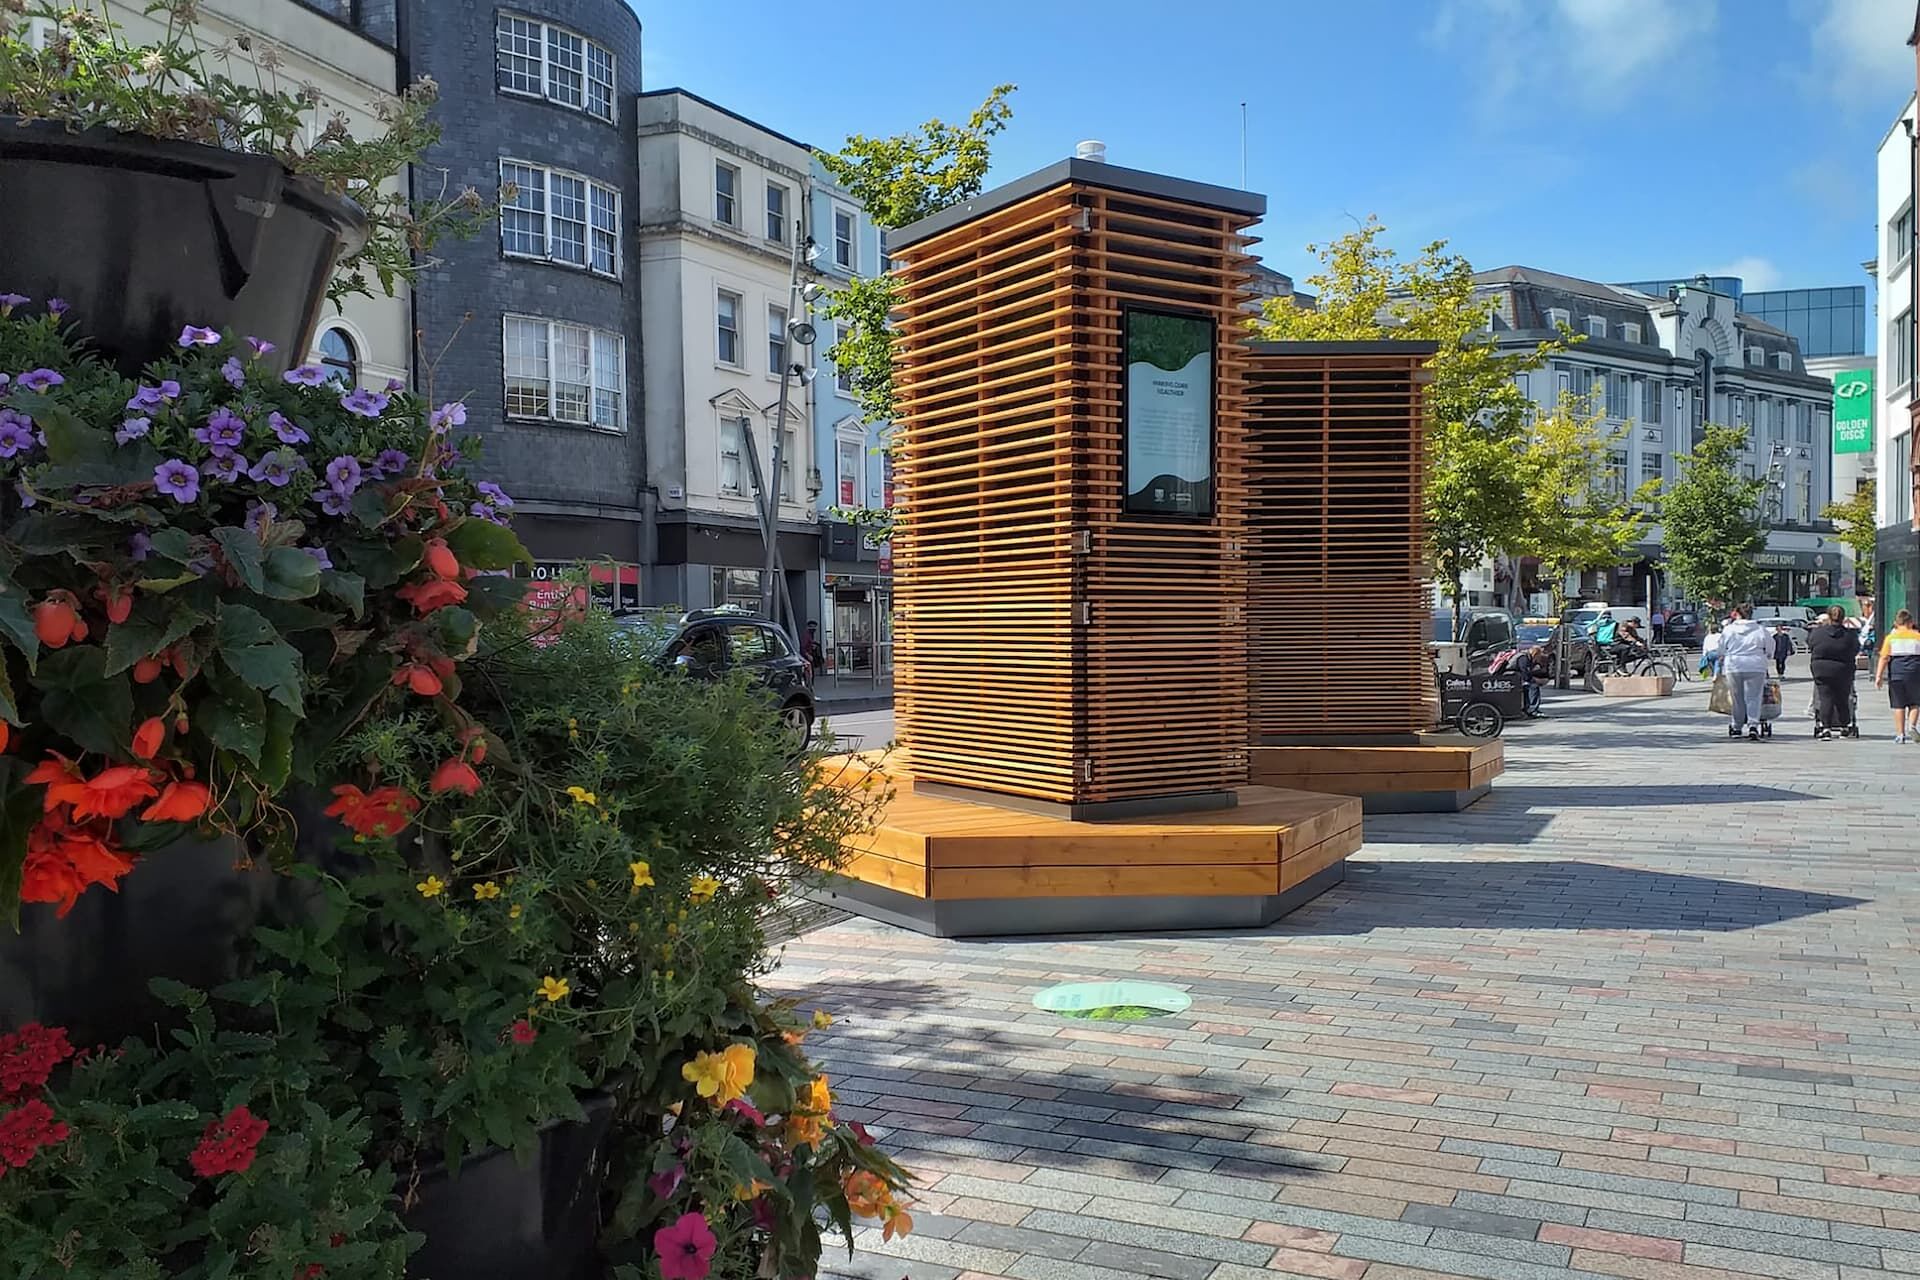 Urbani namještaj koji se bori protiv zagađenja: Infrastruktura gradskog stabla u Corku, Irska (Foto: Green City Solutions)